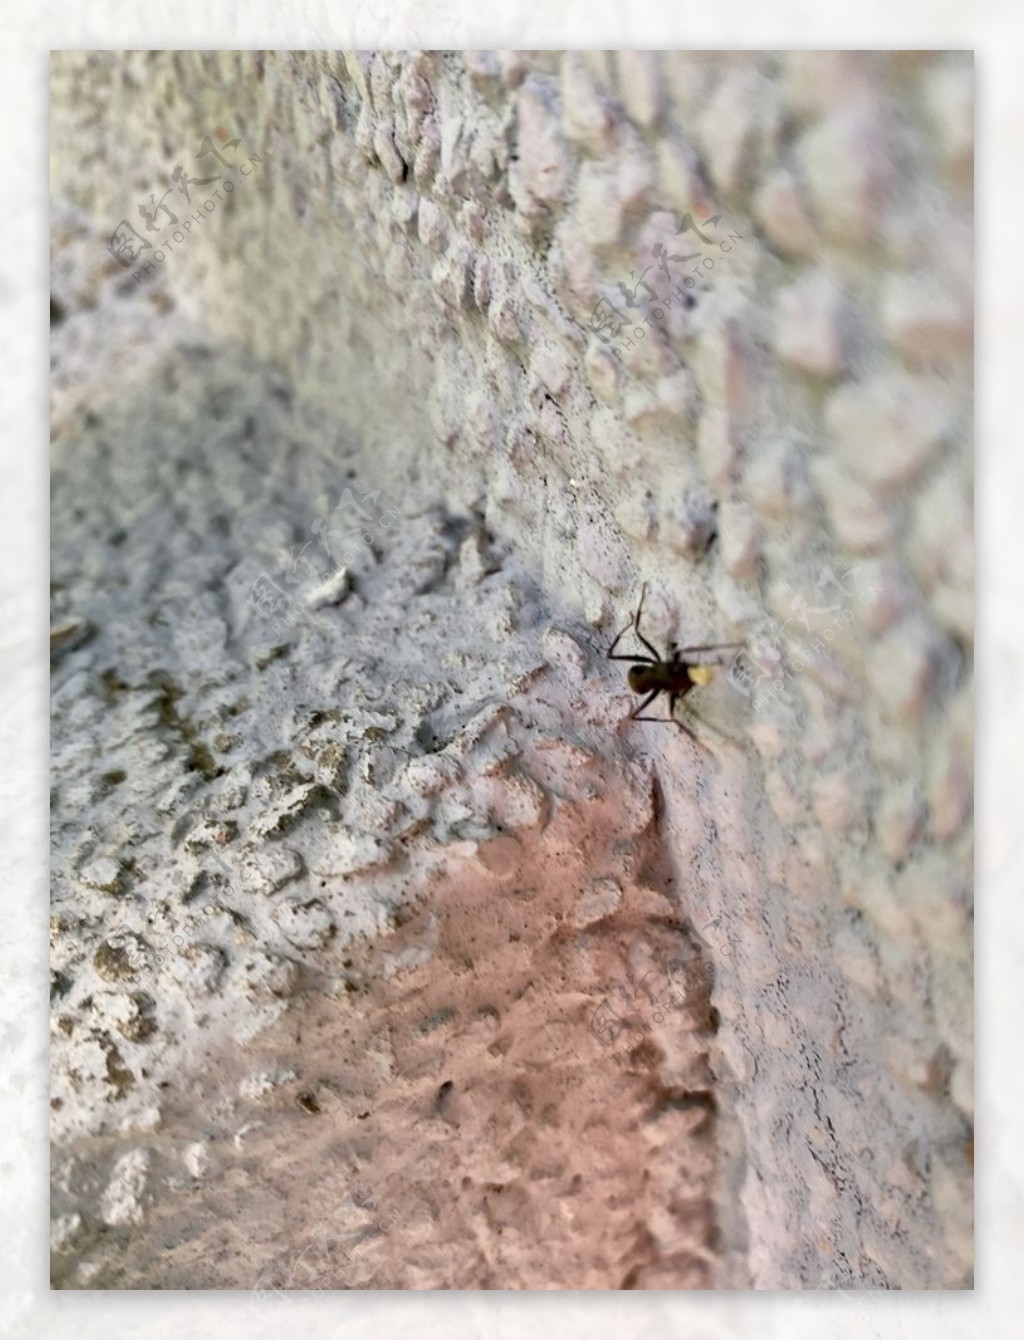 墙边蚂蚁